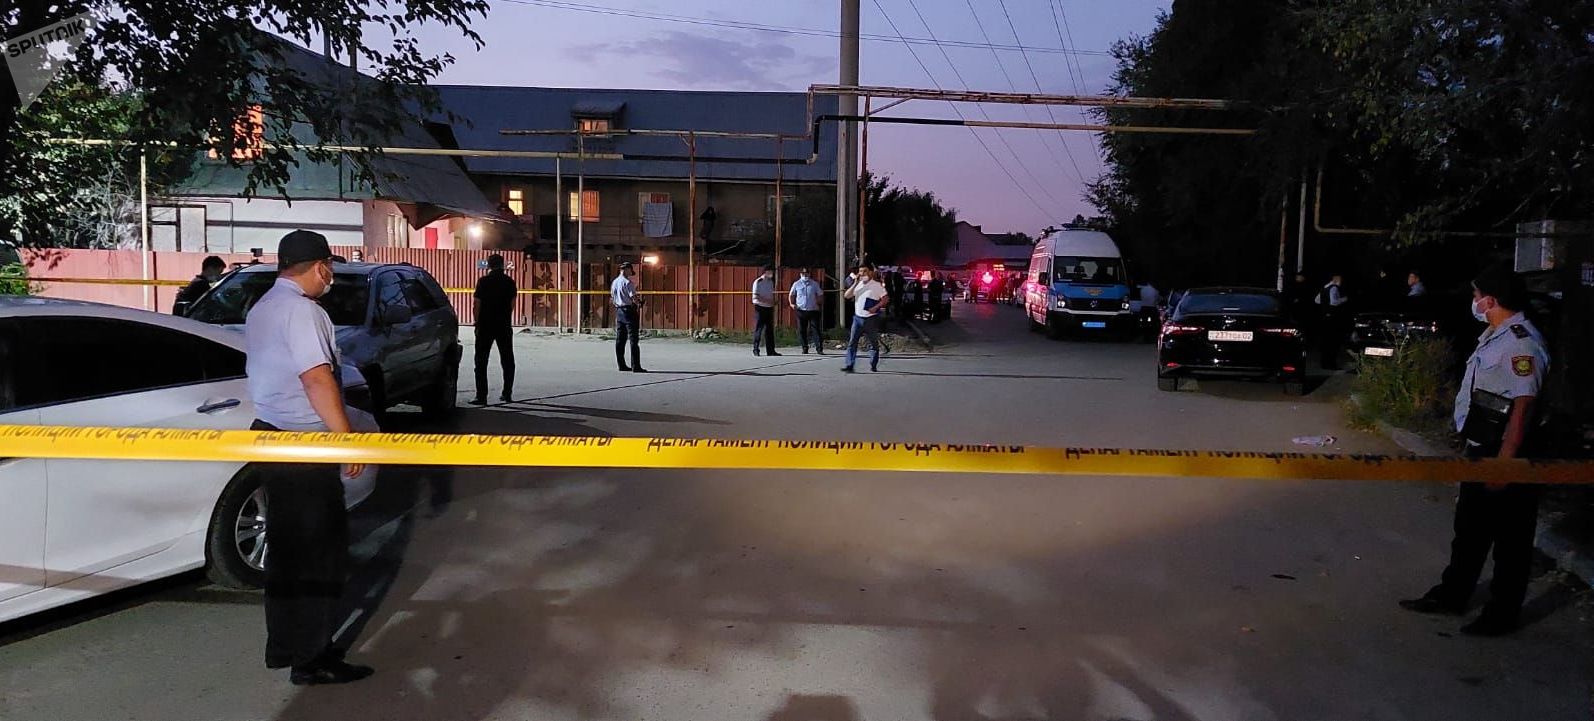 Алматинец расстрелял пять человек, в том числе двух полицейских и судисполнителя. Фото с места событий